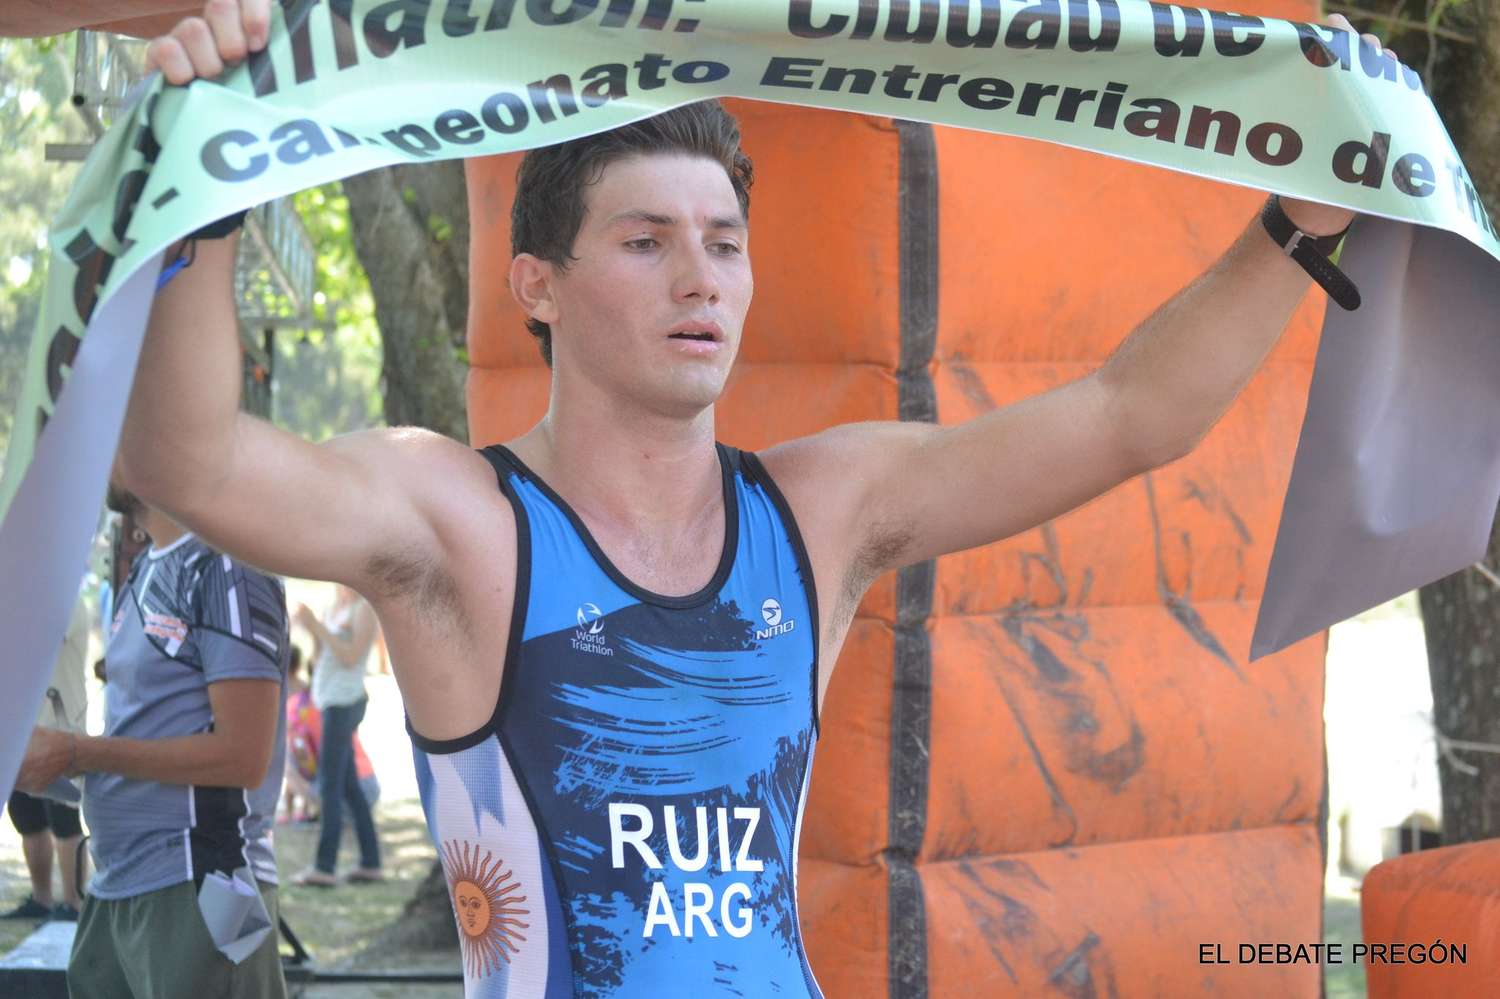 El lapaceño Federico Ruiz se quedó con el triatlón "Ciudad de Gualeguay" dando muestras cabal de un enorme estado físico en las tres disciplinas: atletismo, natación y ciclismo.